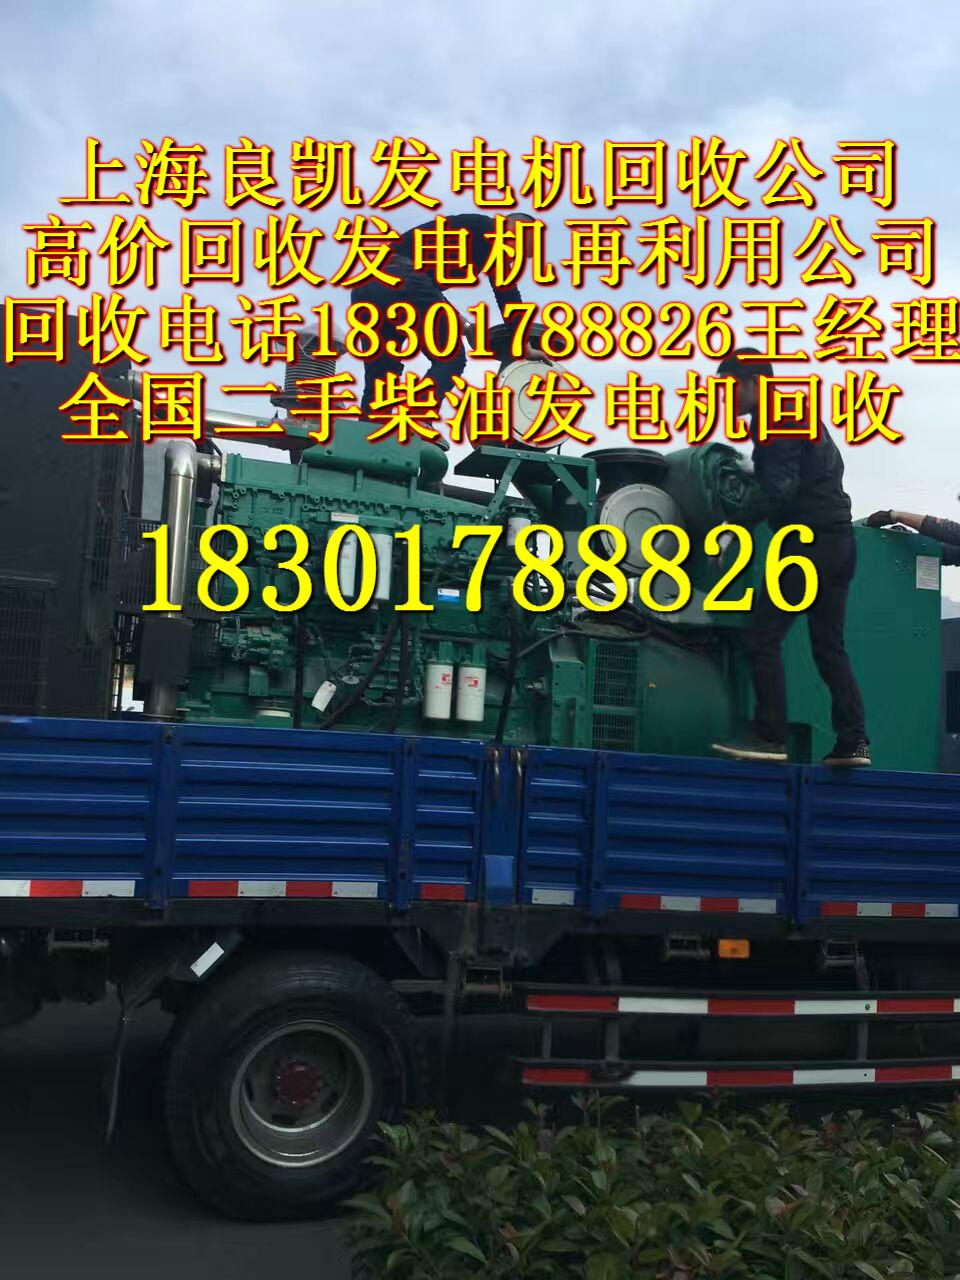 苏州发电机回收价格报价_苏州二手发电机回收公司